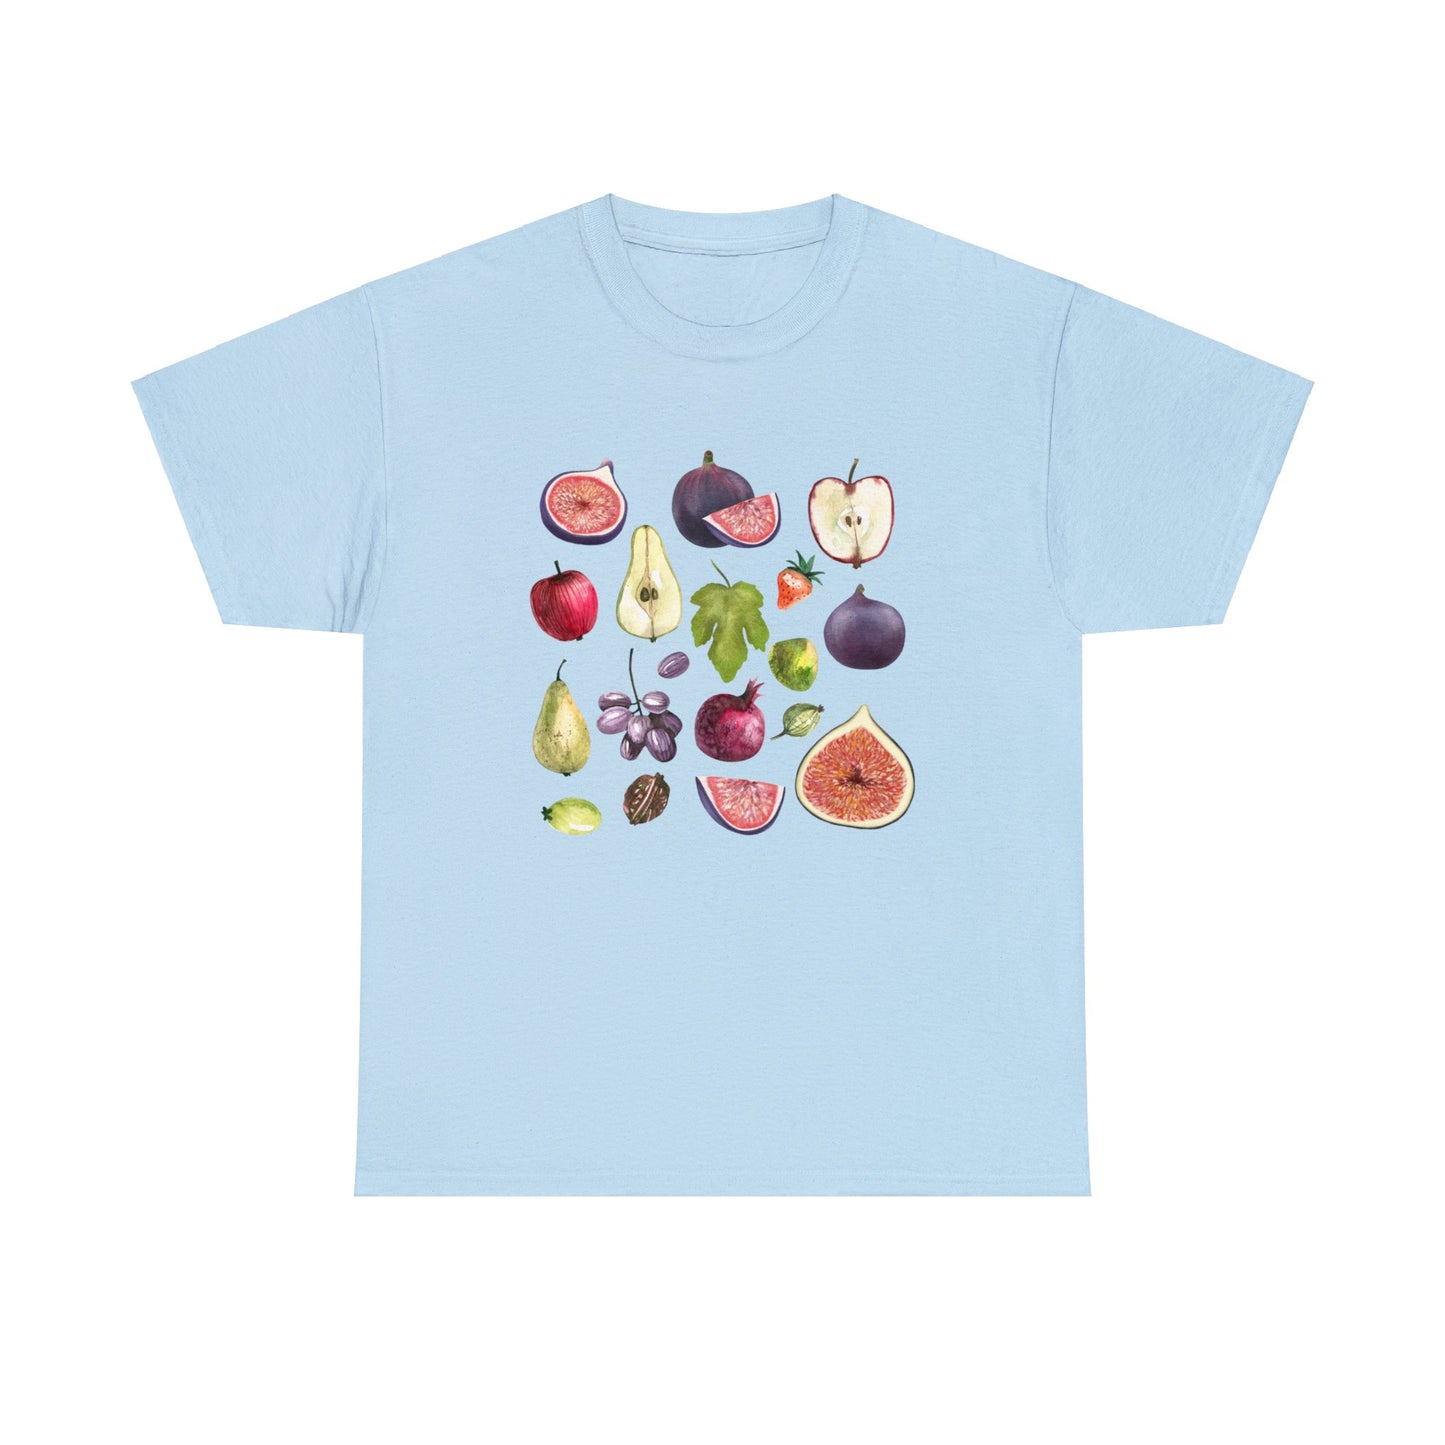 Figs T-shirt